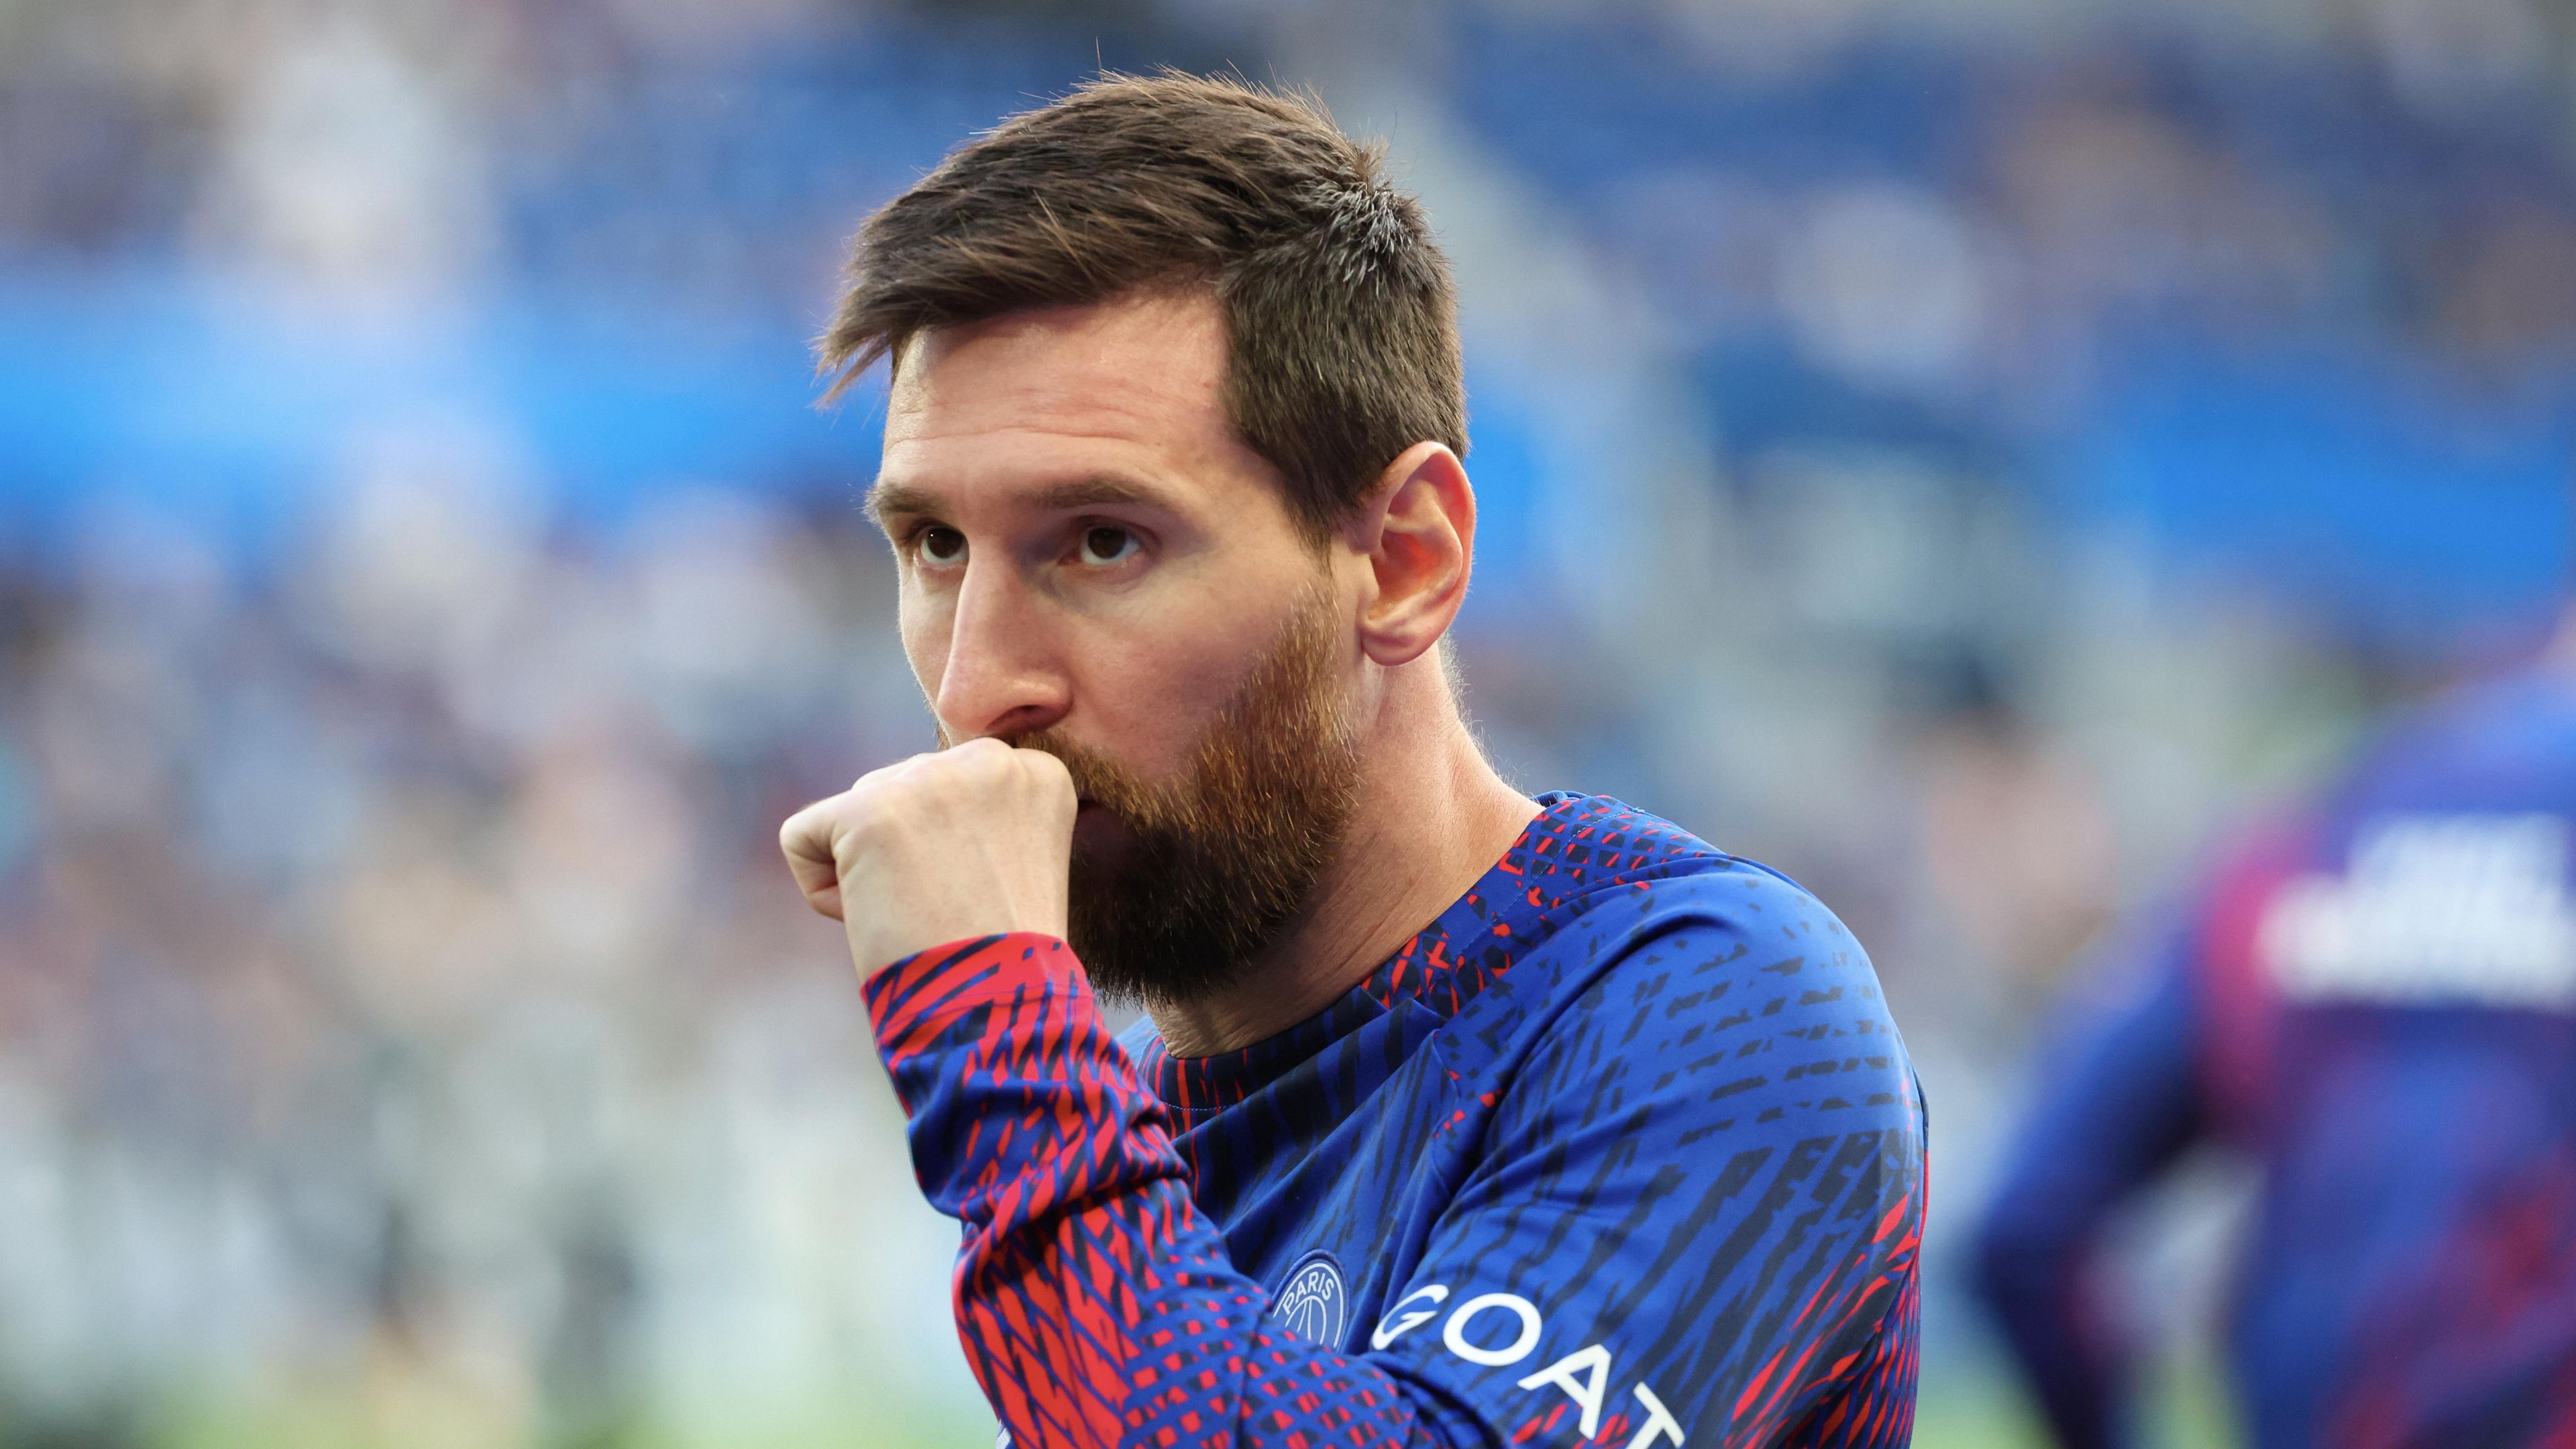 Lionel Messi jövője továbbra is képlékeny, de állítólag nagyon szeretne visszatérni a Barcelonához